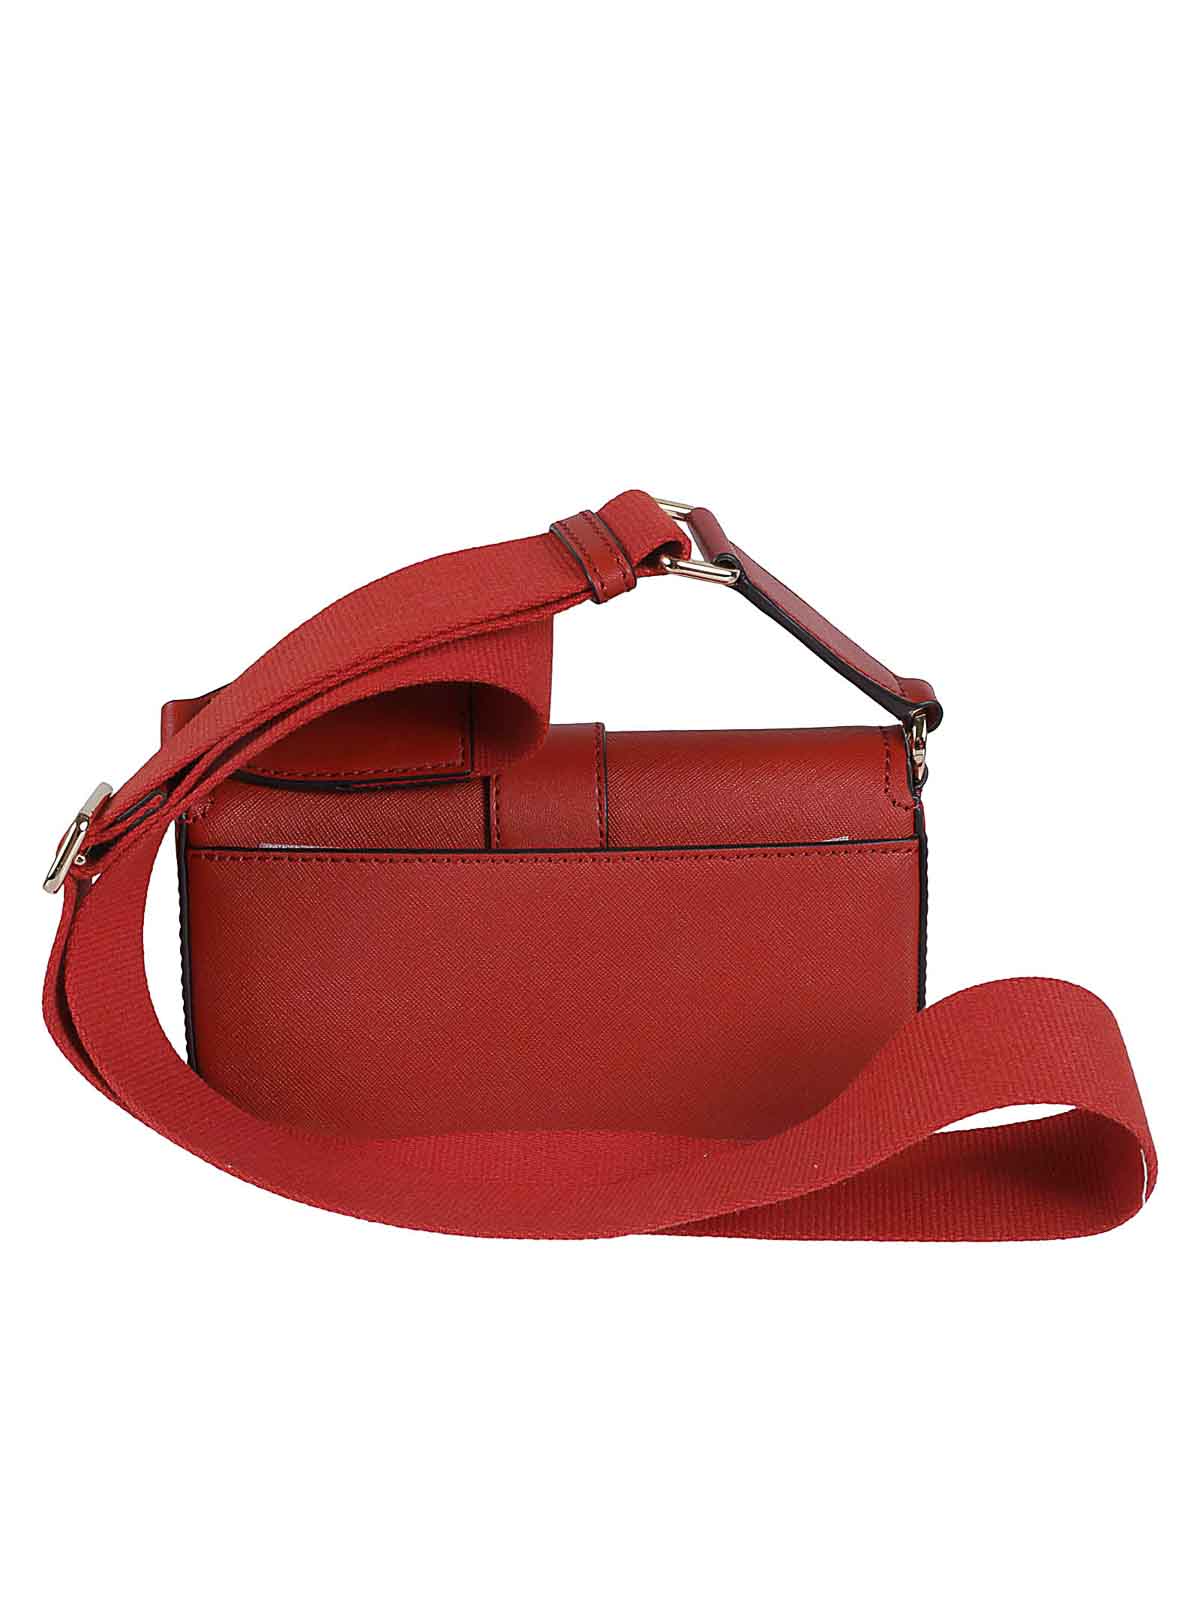 michael kors saffiano red leather shoulder bag